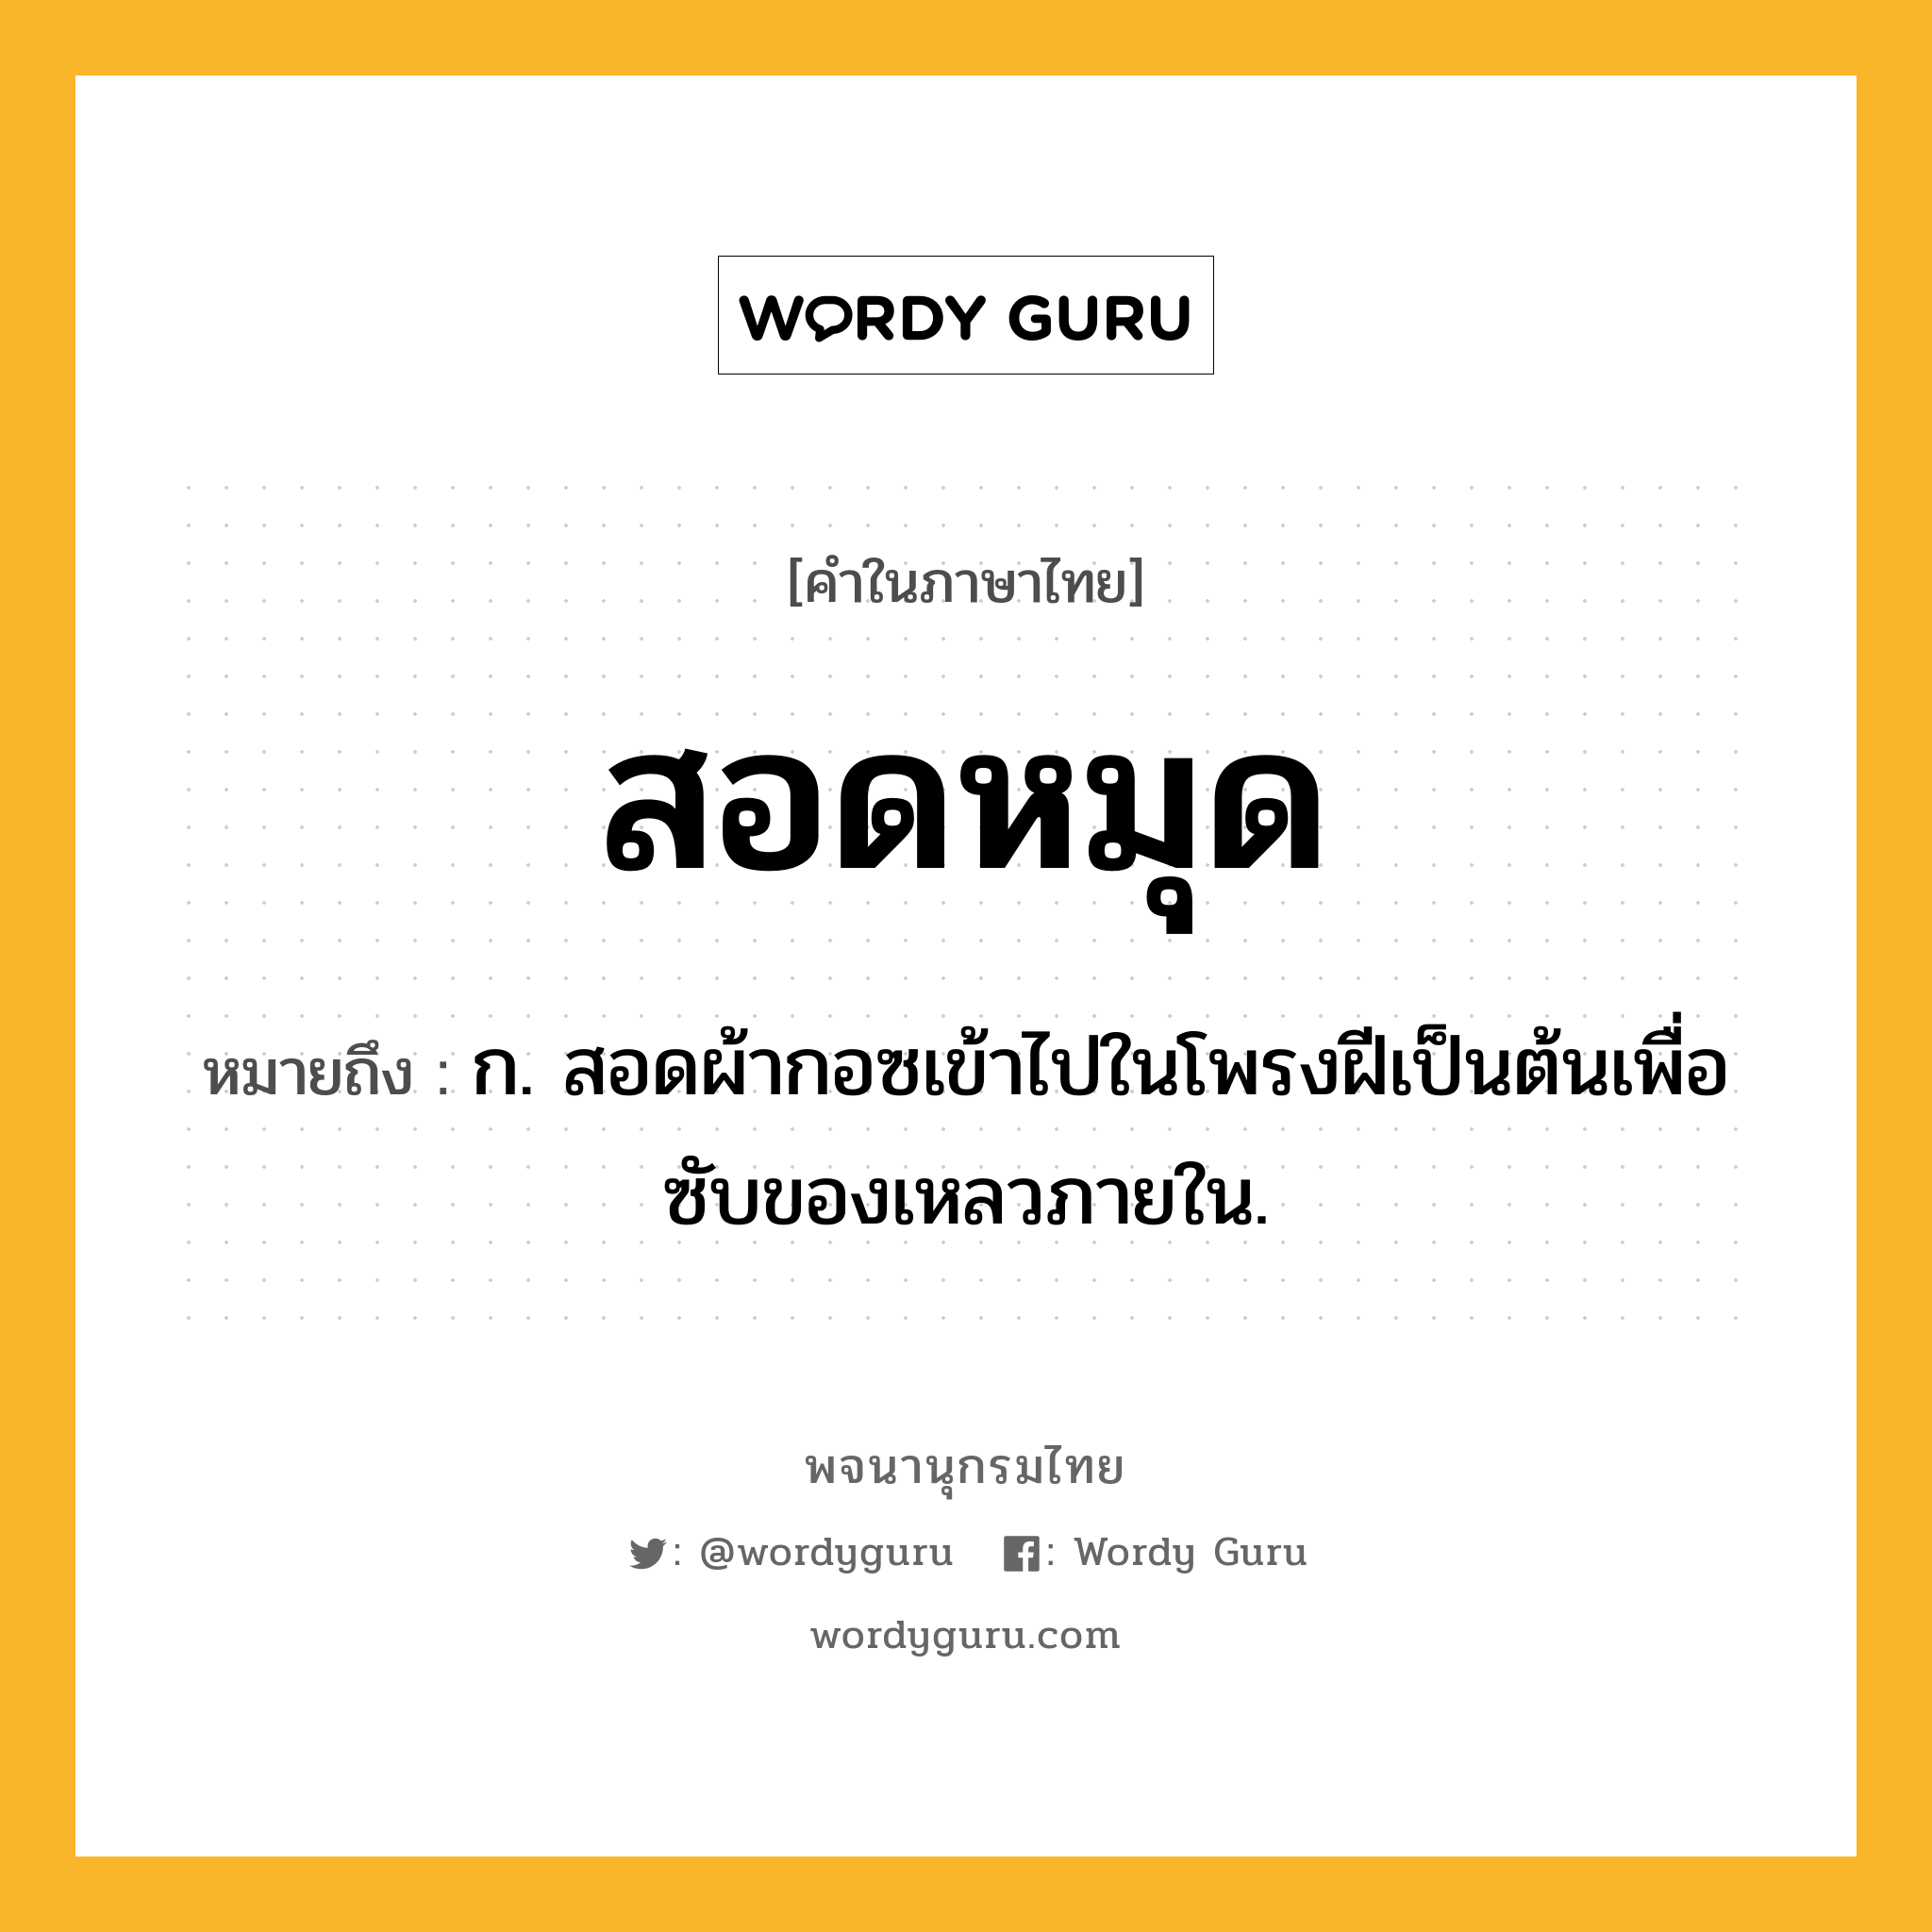 สอดหมุด ความหมาย หมายถึงอะไร?, คำในภาษาไทย สอดหมุด หมายถึง ก. สอดผ้ากอซเข้าไปในโพรงฝีเป็นต้นเพื่อซับของเหลวภายใน.